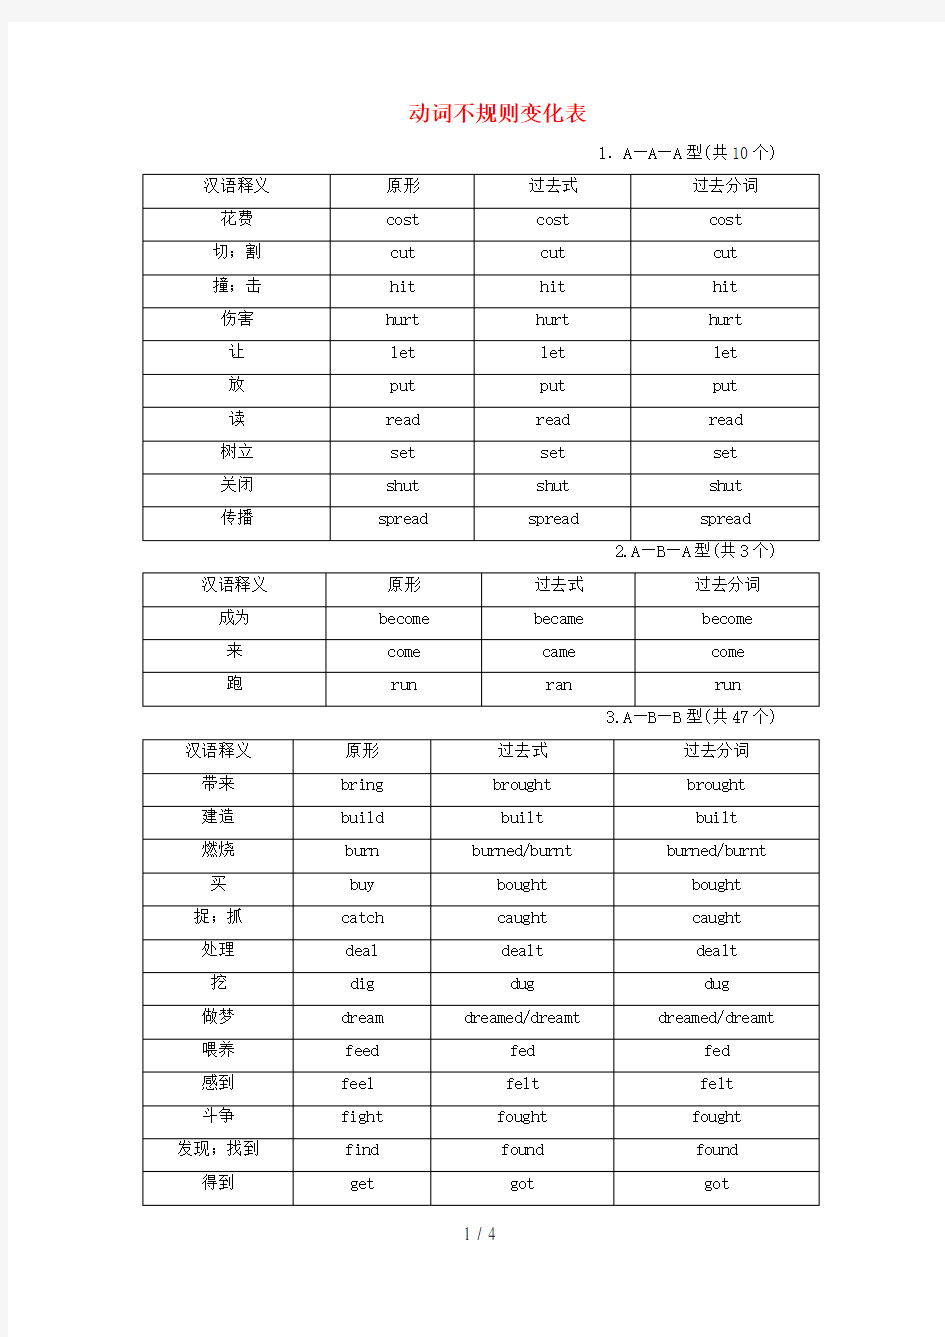 河南省中考英语总复习早读材料动词不规则变化表